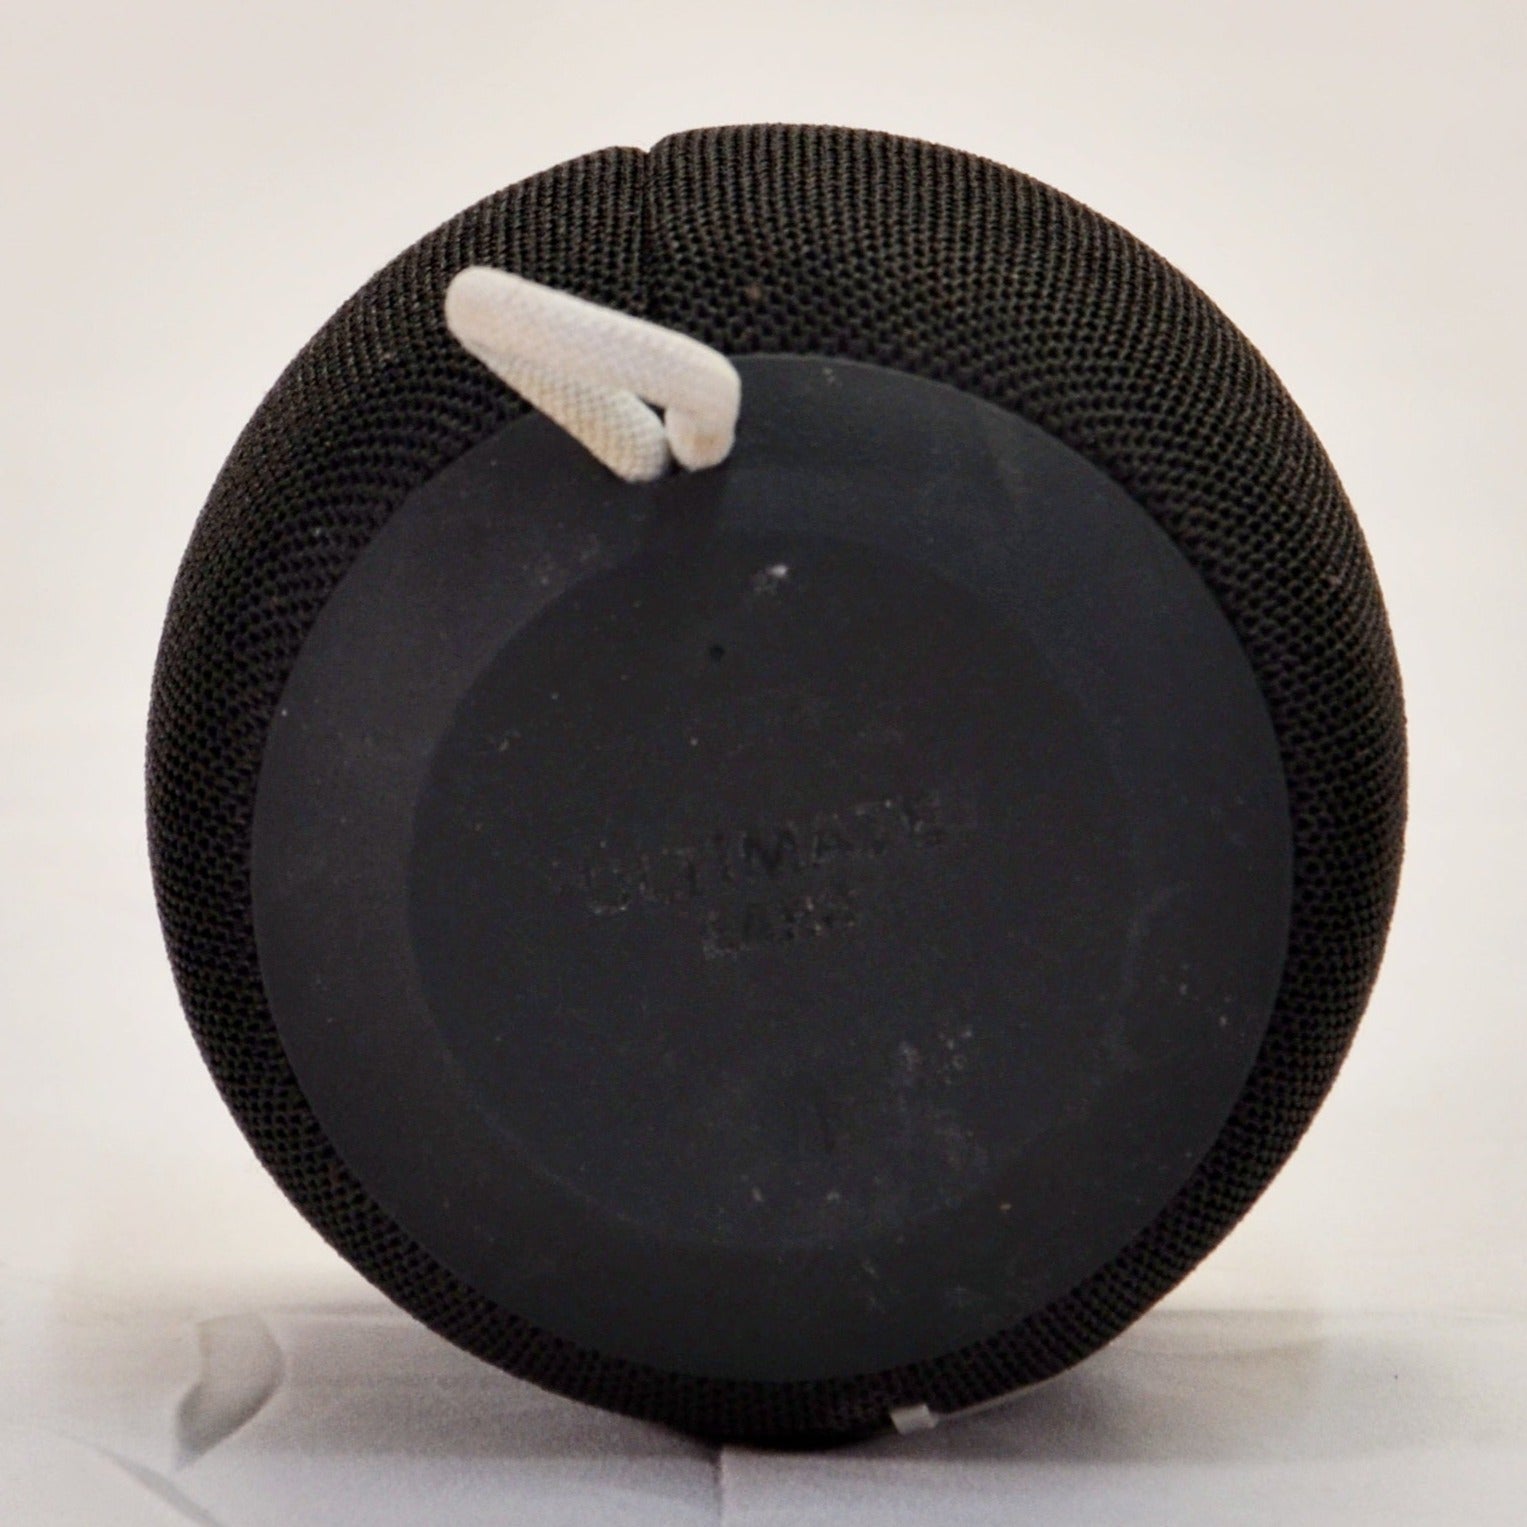 Ultimate Ears WONDERBOOM Portable Waterproof Bluetooth Speaker - Phantom  Black